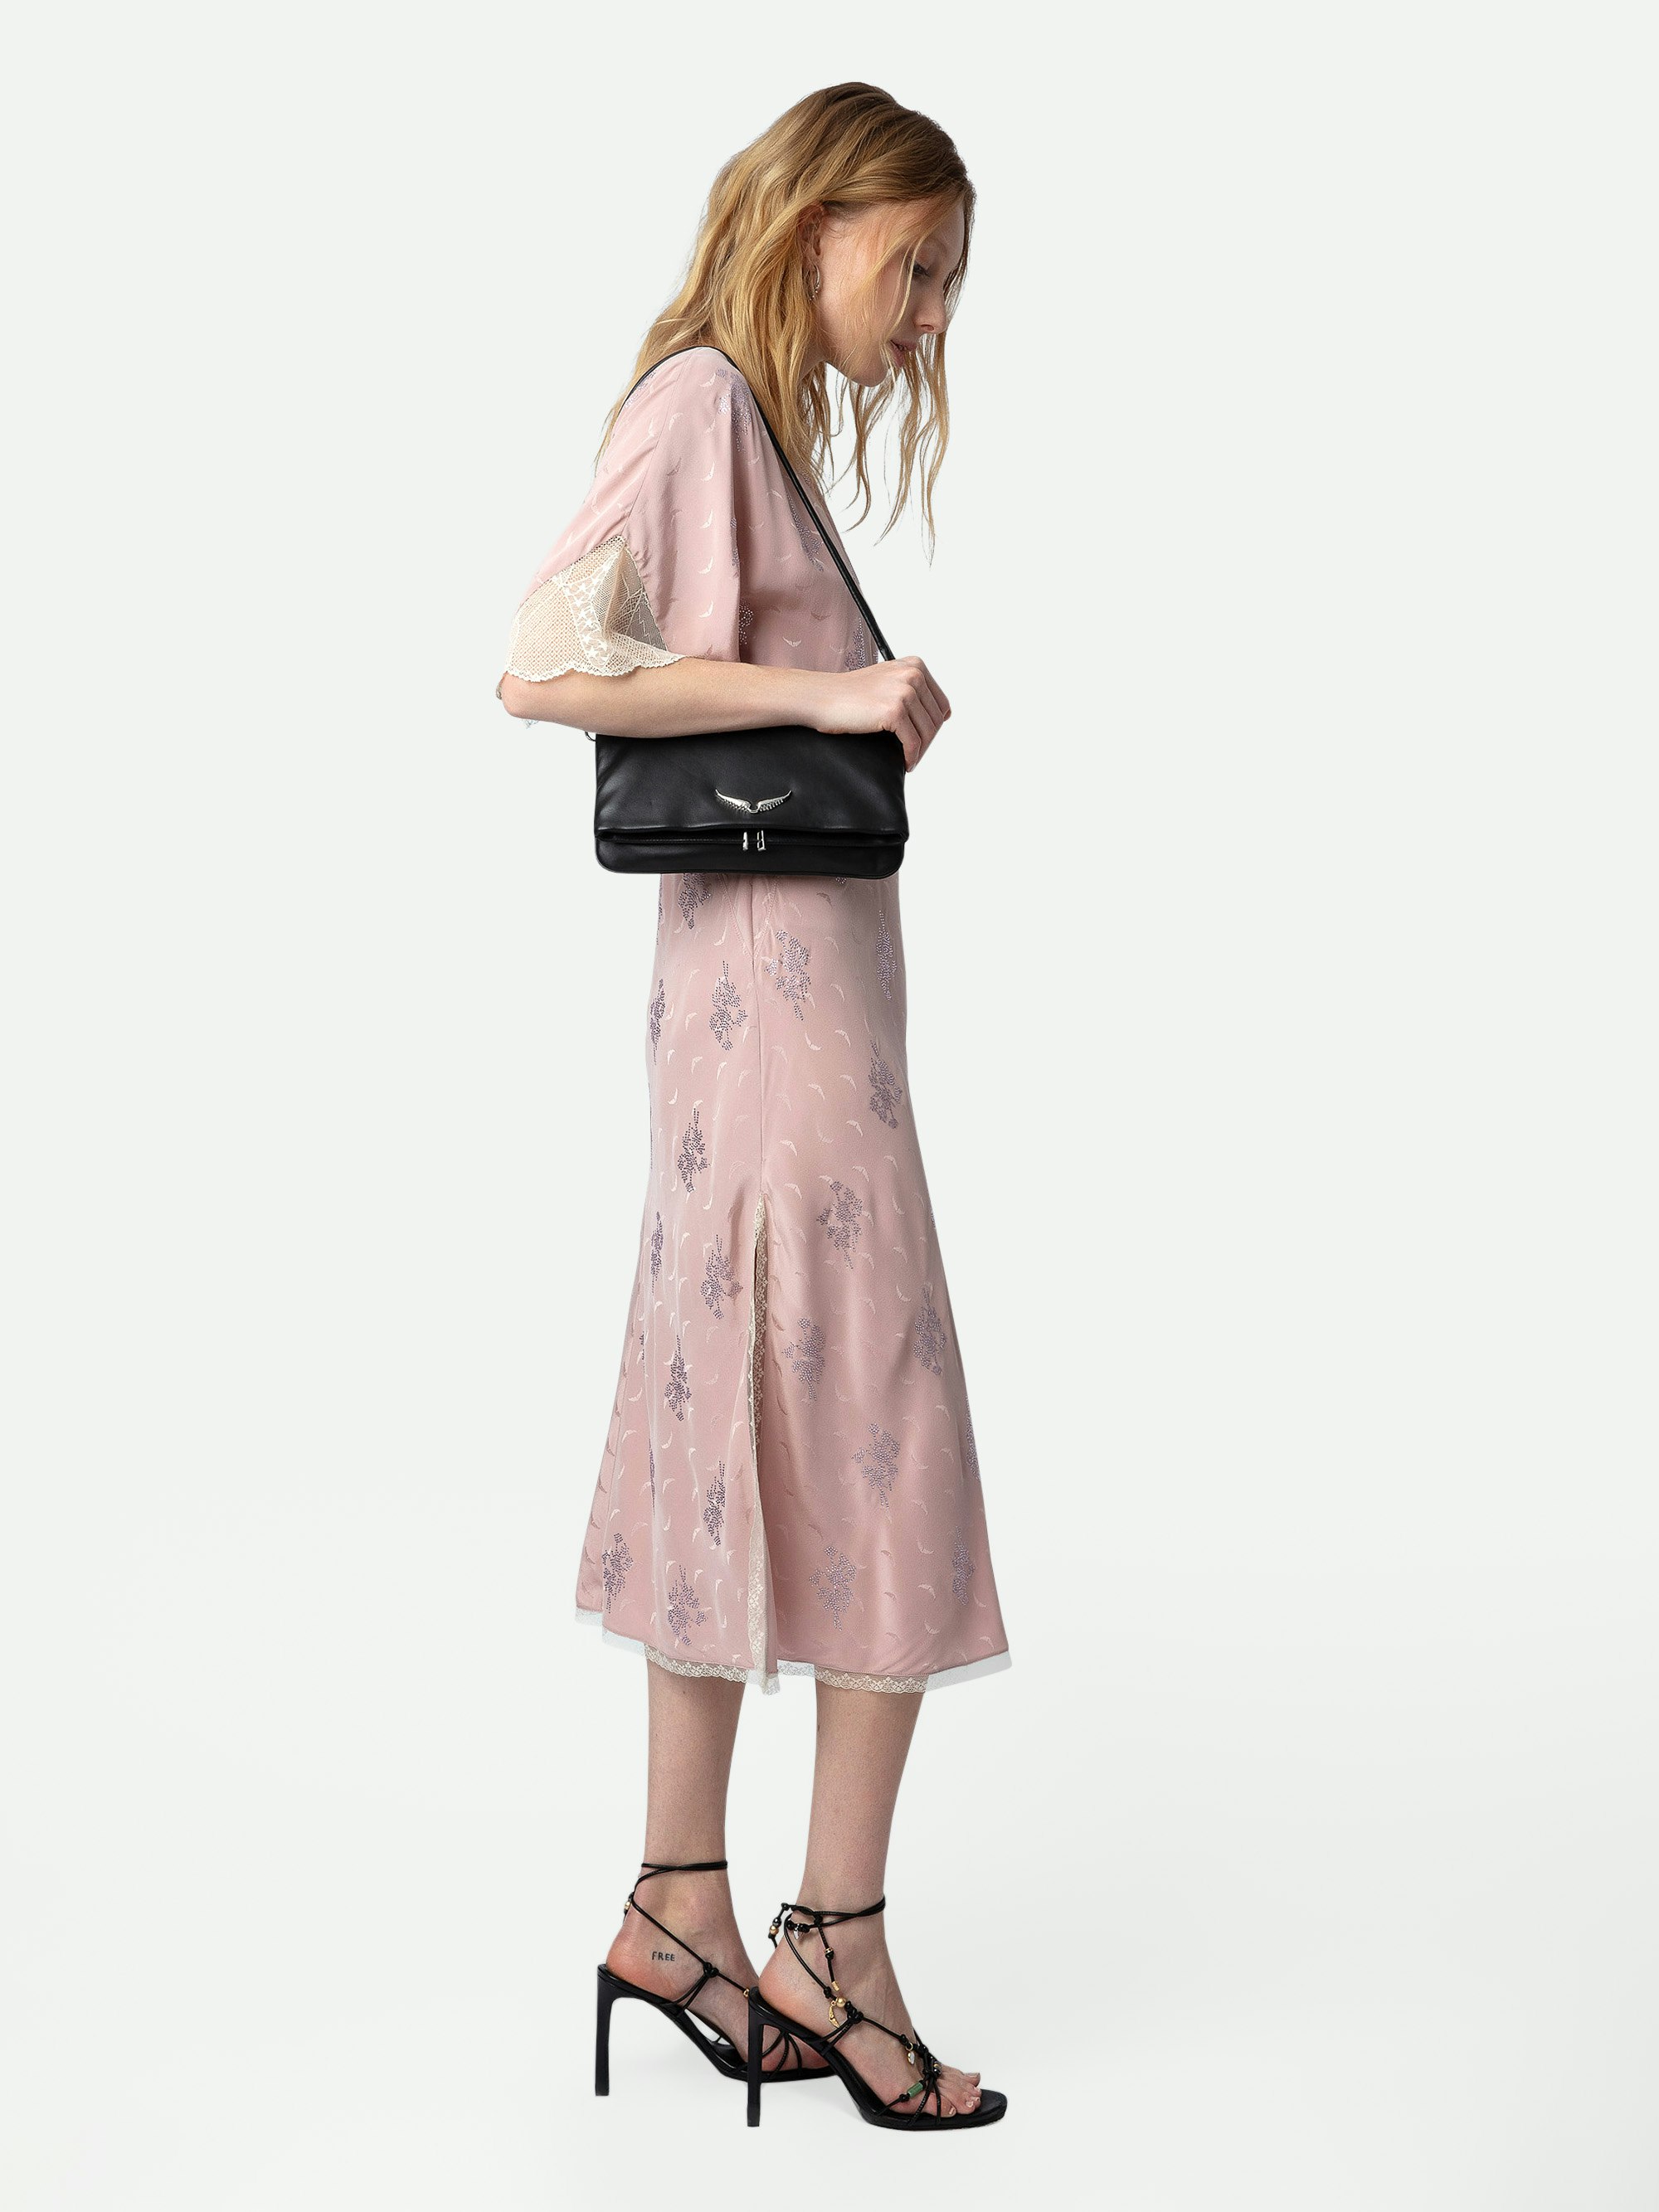 Kleid Rey Seide Jacquard - Halblanges Seidenkleid im Lingerie-Stil in Rosa mit Jacquard-Flügeln, Strass, Spitze und Cutout am Rücken.